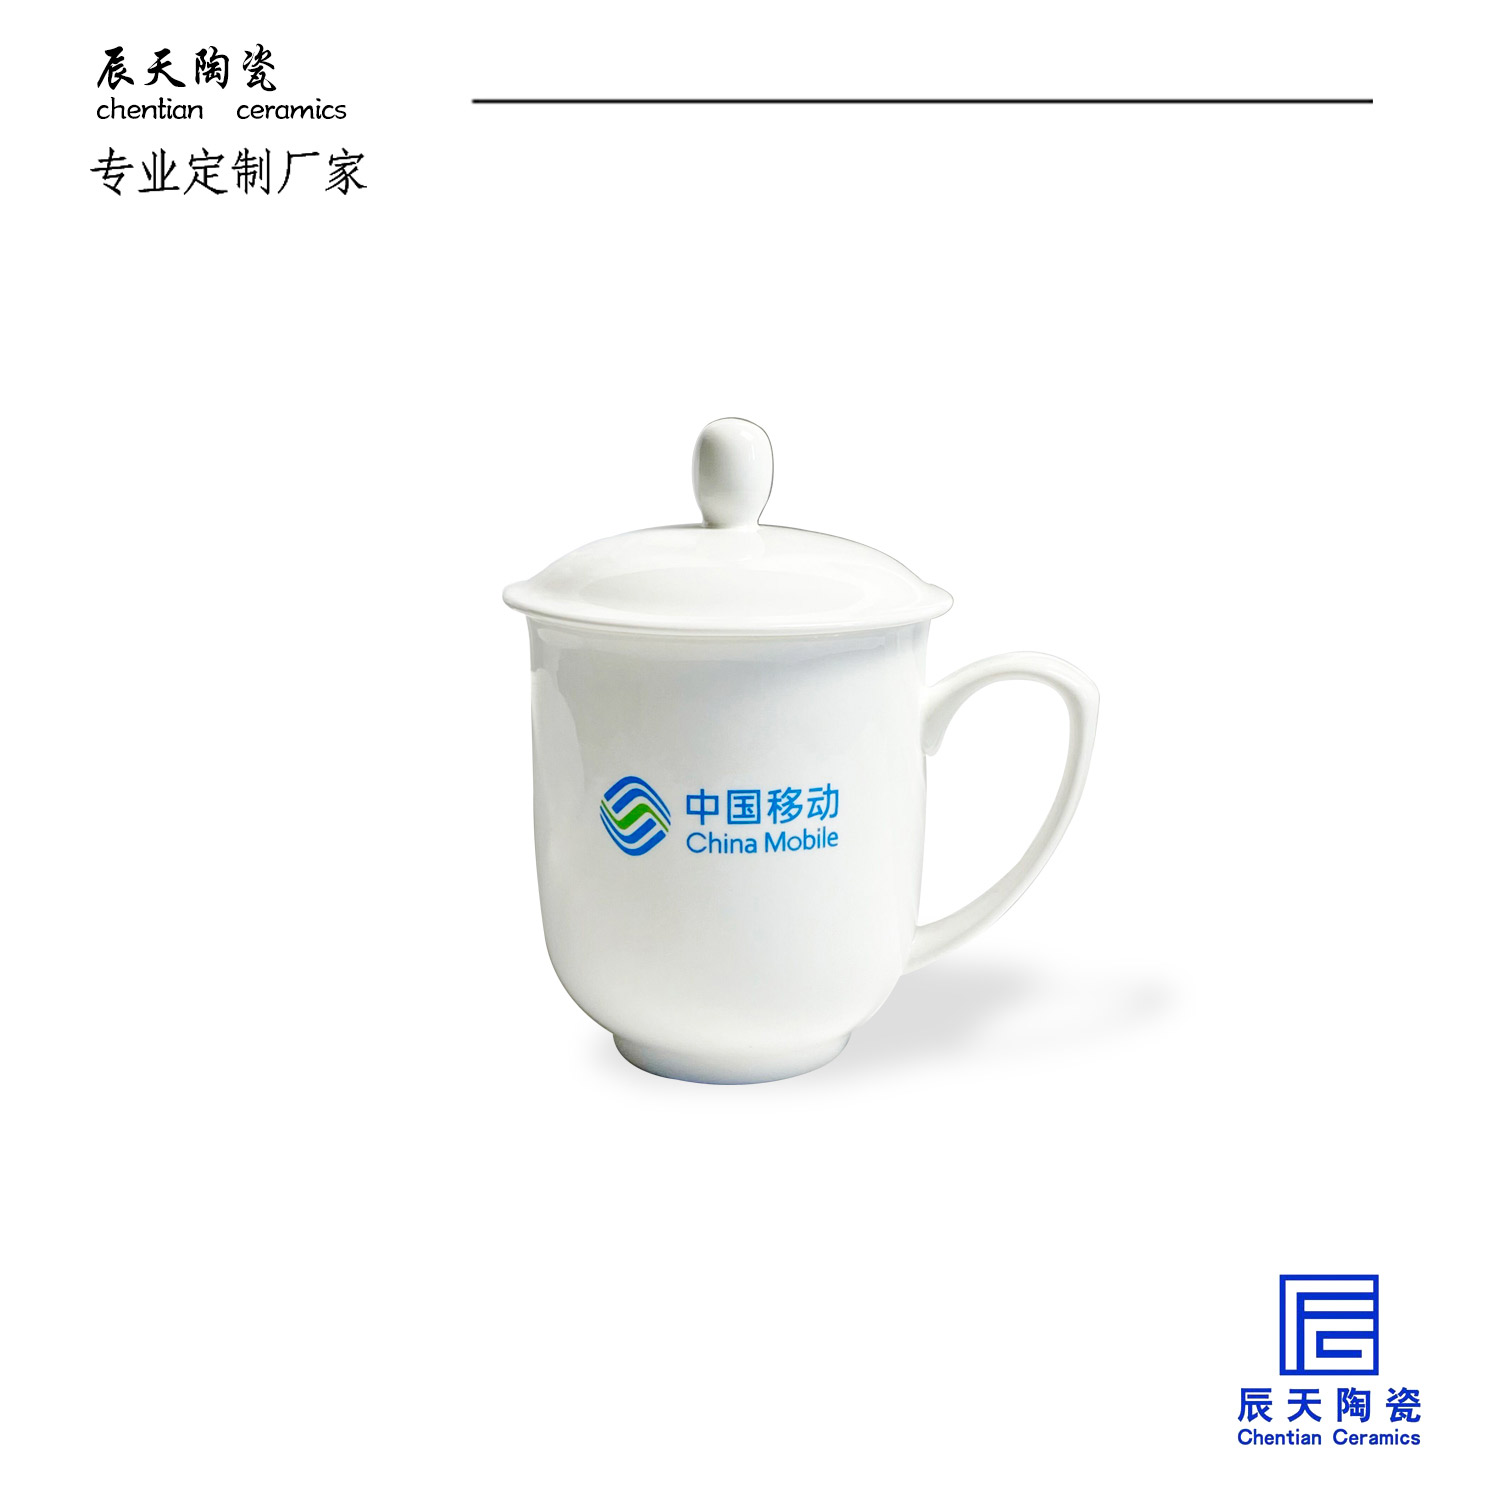 <b>中國移動定制的陶瓷茶杯</b>